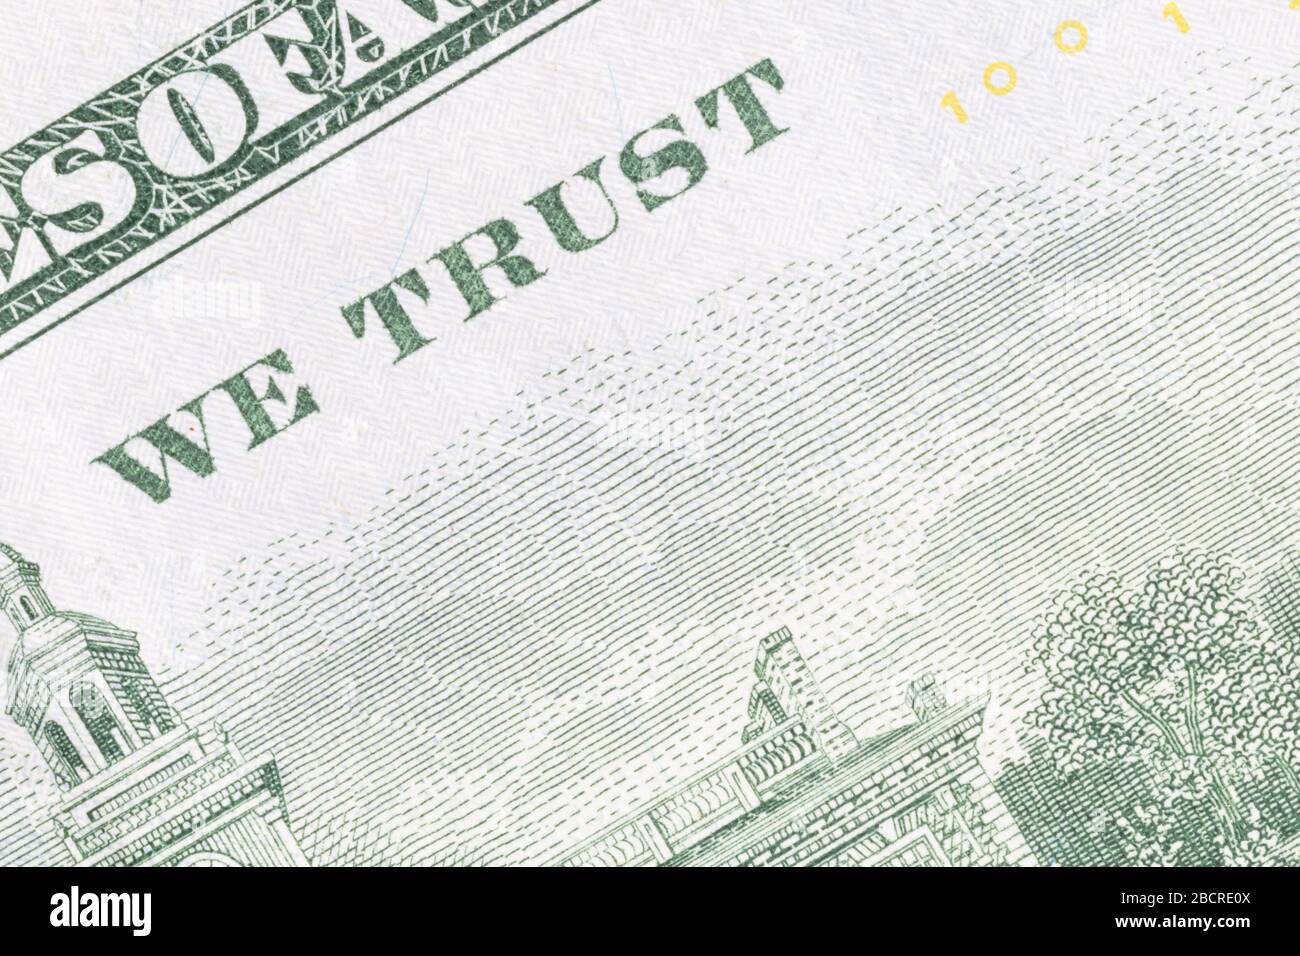 Nahaufnahme des Textes wir vertrauen auf die Rückseite einer 100-Dollar-Banknote Stockfoto